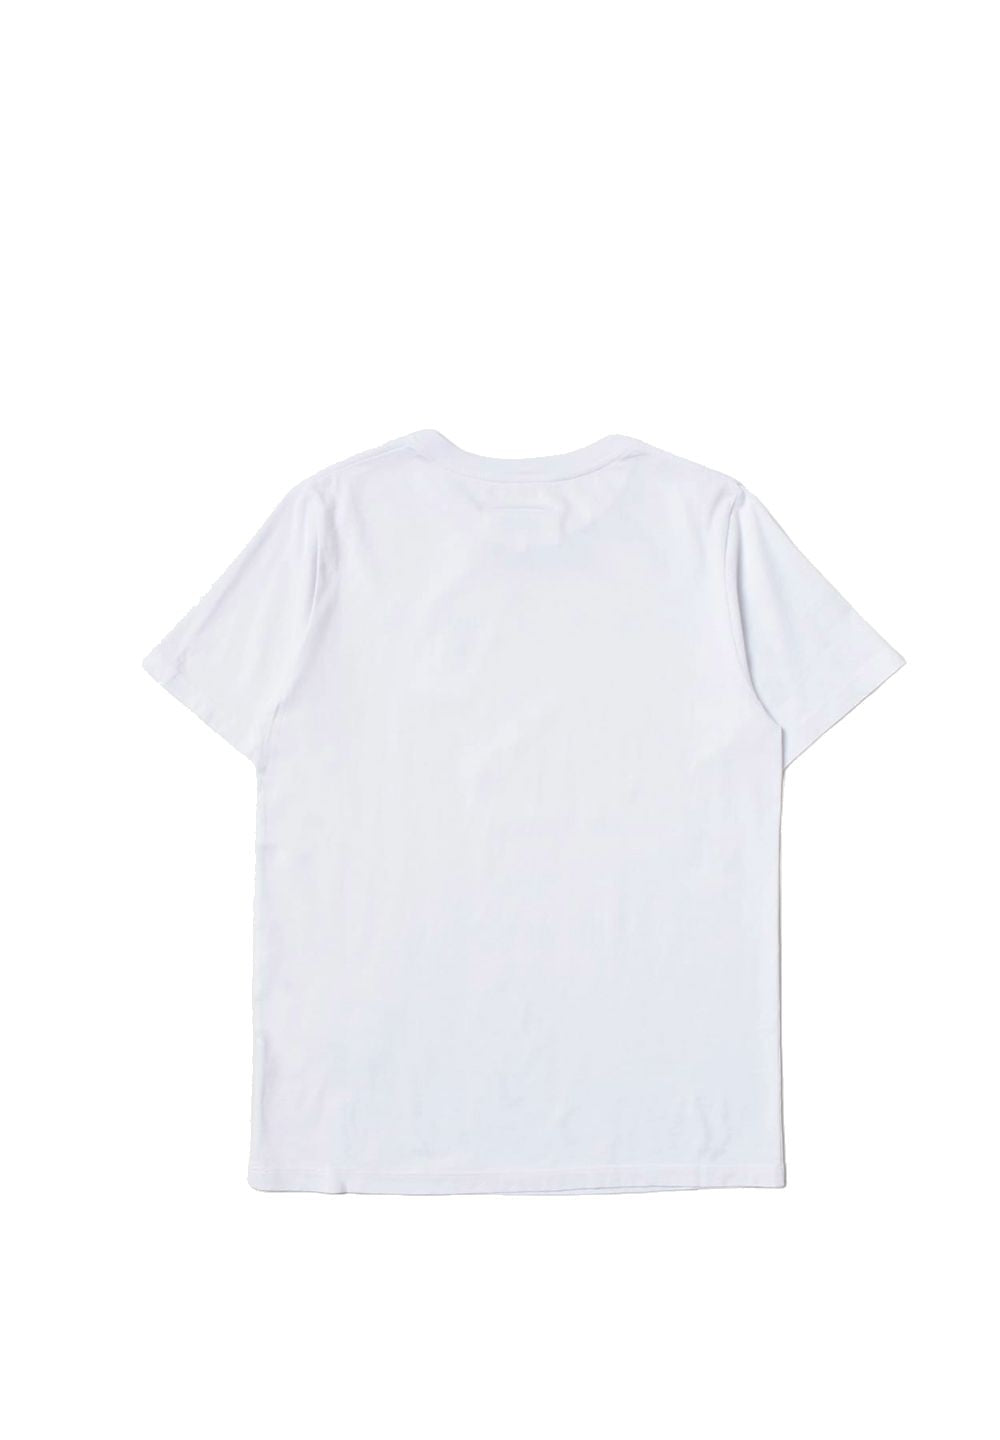 T-shirt bianca per bambina - Primamoda kids